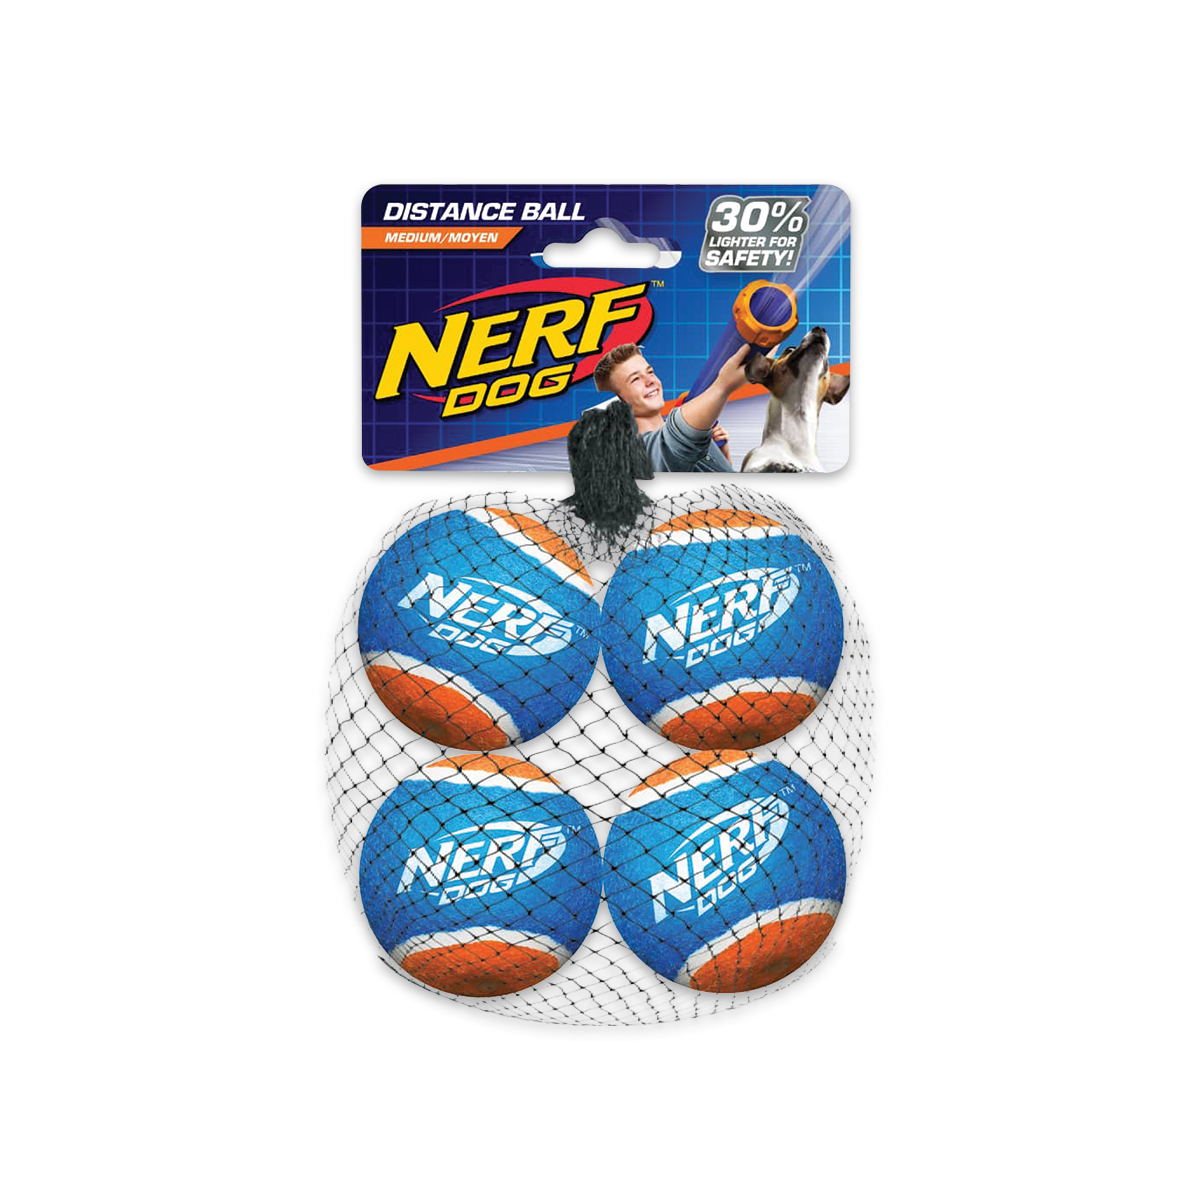 Nerf Dog Blaster Distance Balls เนิร์ฟด็อก ลูกบอลสำหรับปืน ขนาด 2.5 นิ้ว